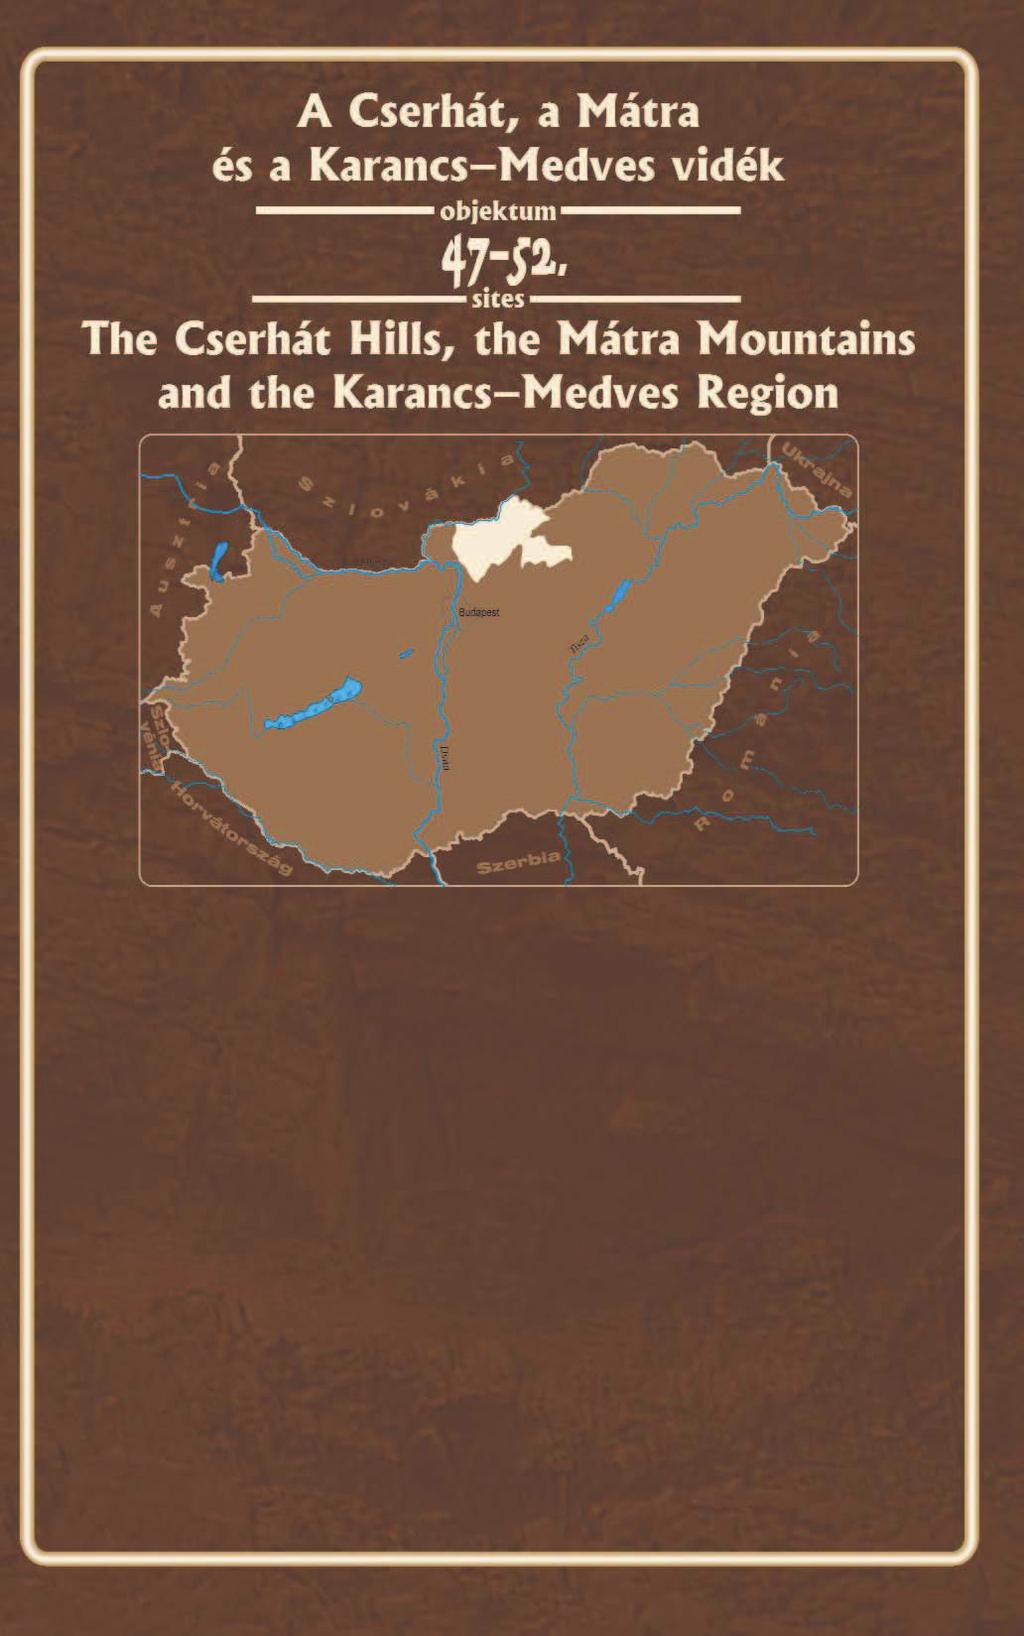 Az Északi-középhegység miocén andezitvulkáni ívének középs szakaszát a Cserhát és a Mátra alkotja, amelyhez északon a Karancs Medves vidék bazaltterülete csatlakozik.